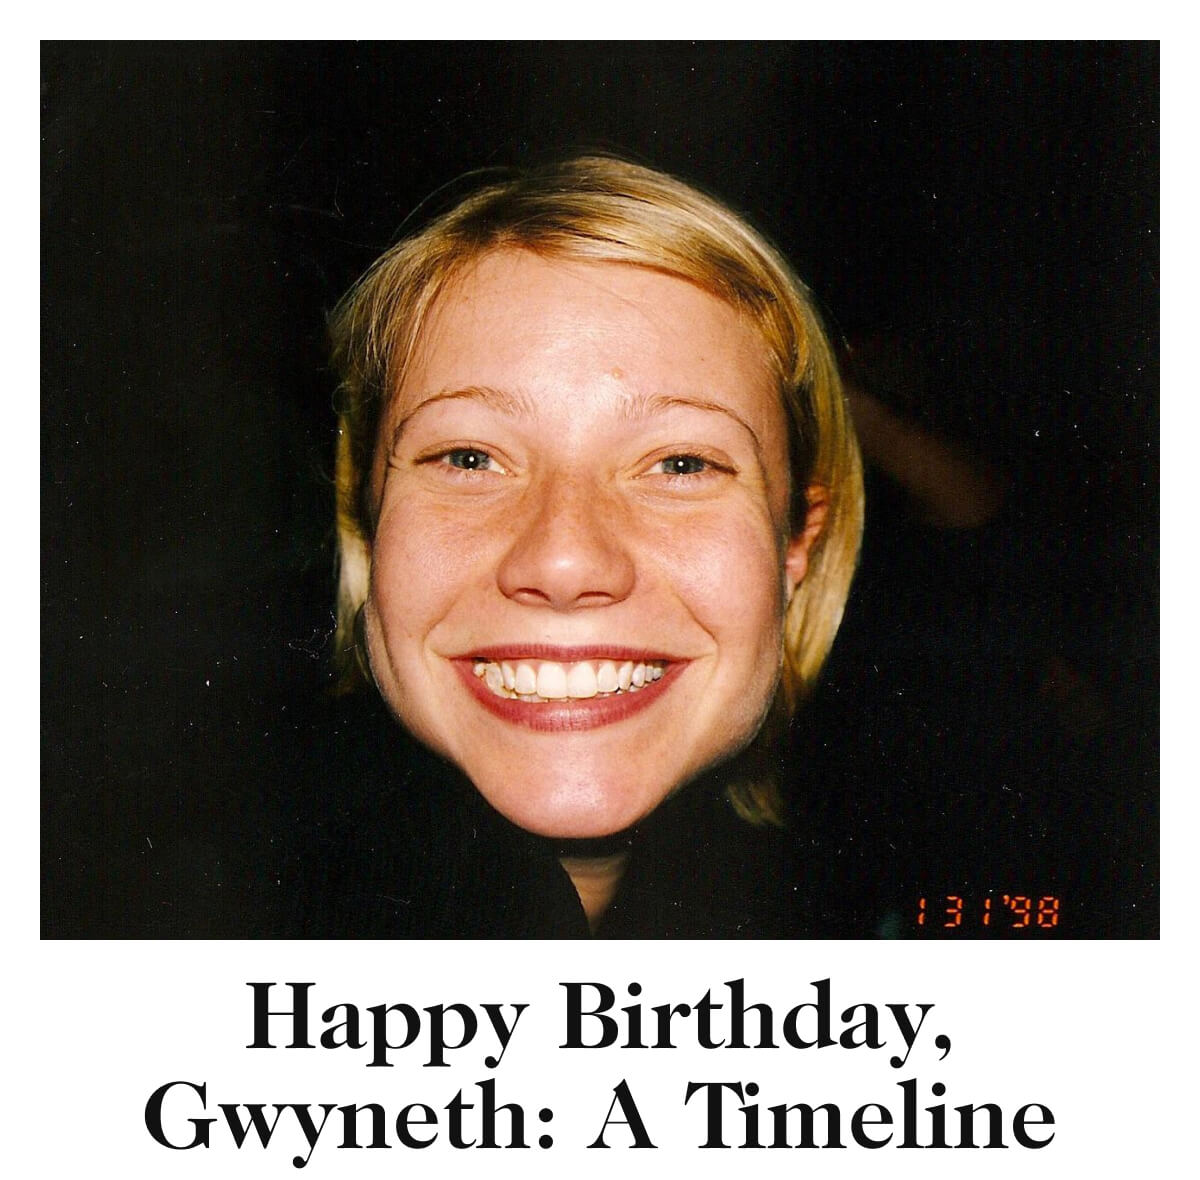 Happy Birthday, Gwyneth: A Timeline